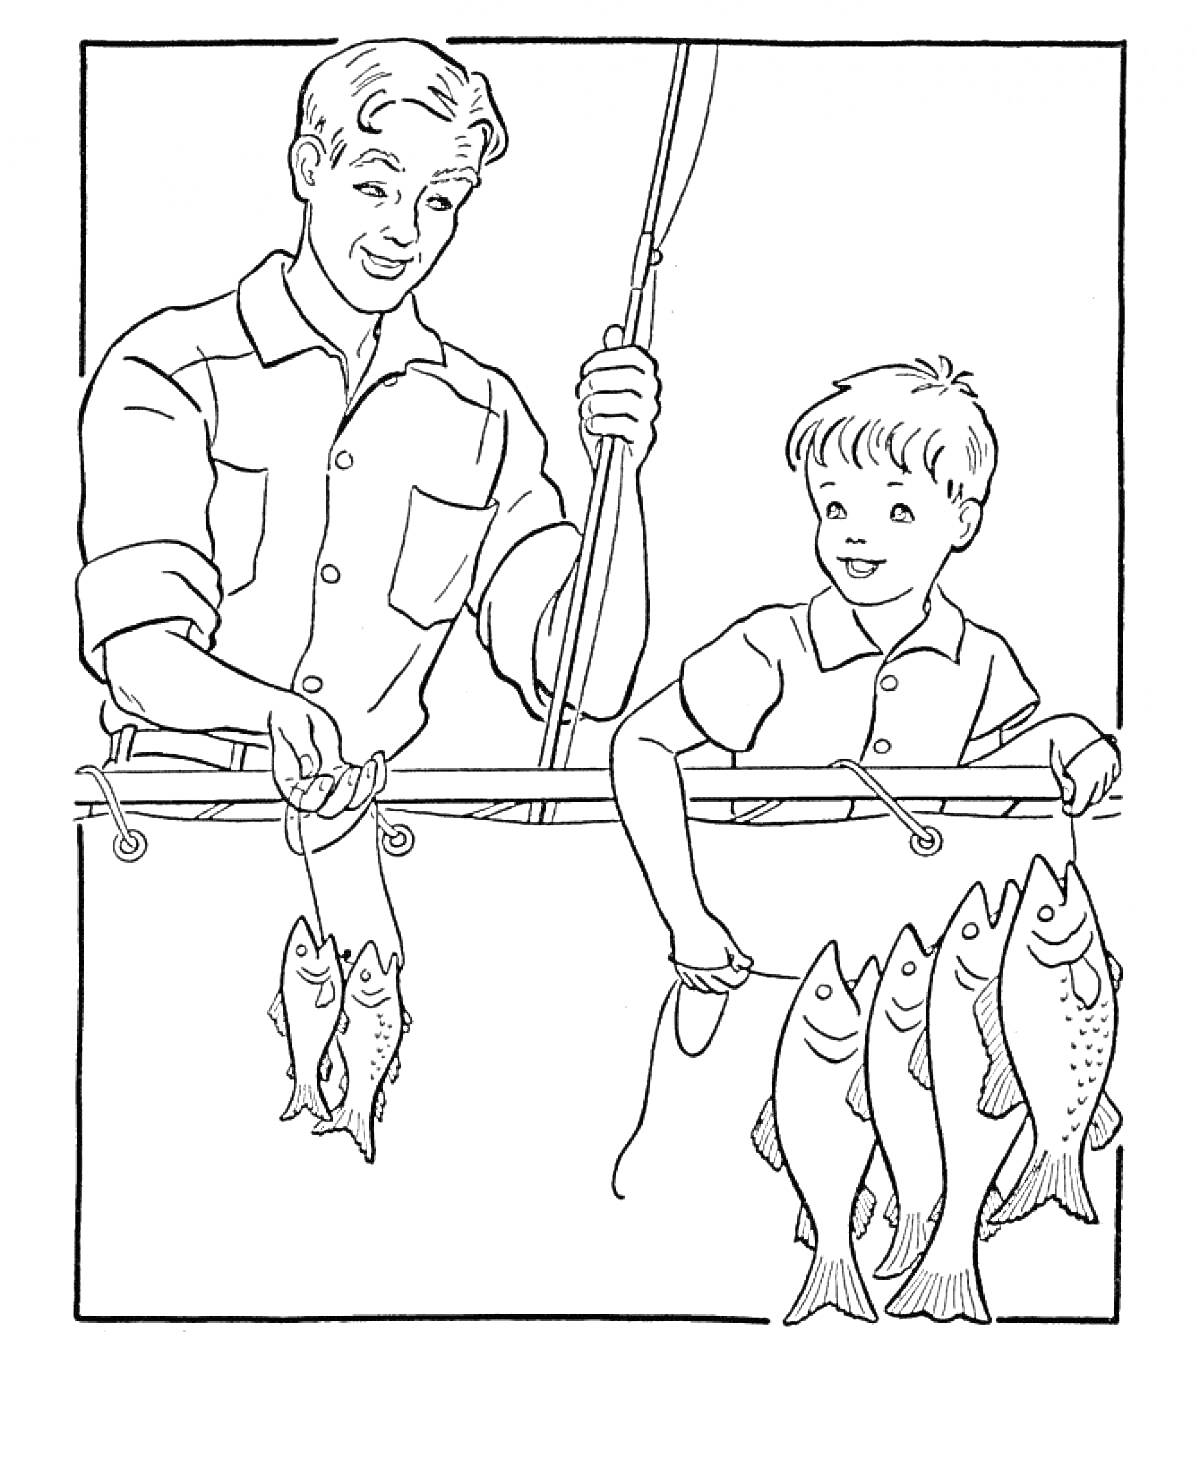 Папа с сыном ловят рыбу на удочку, держат улов в руках